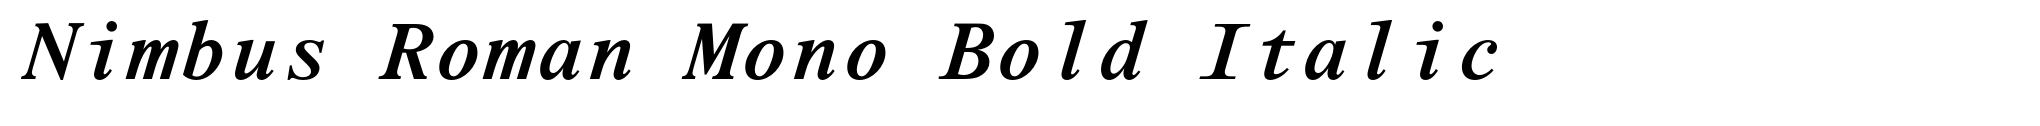 Nimbus Roman Mono Bold Italic image